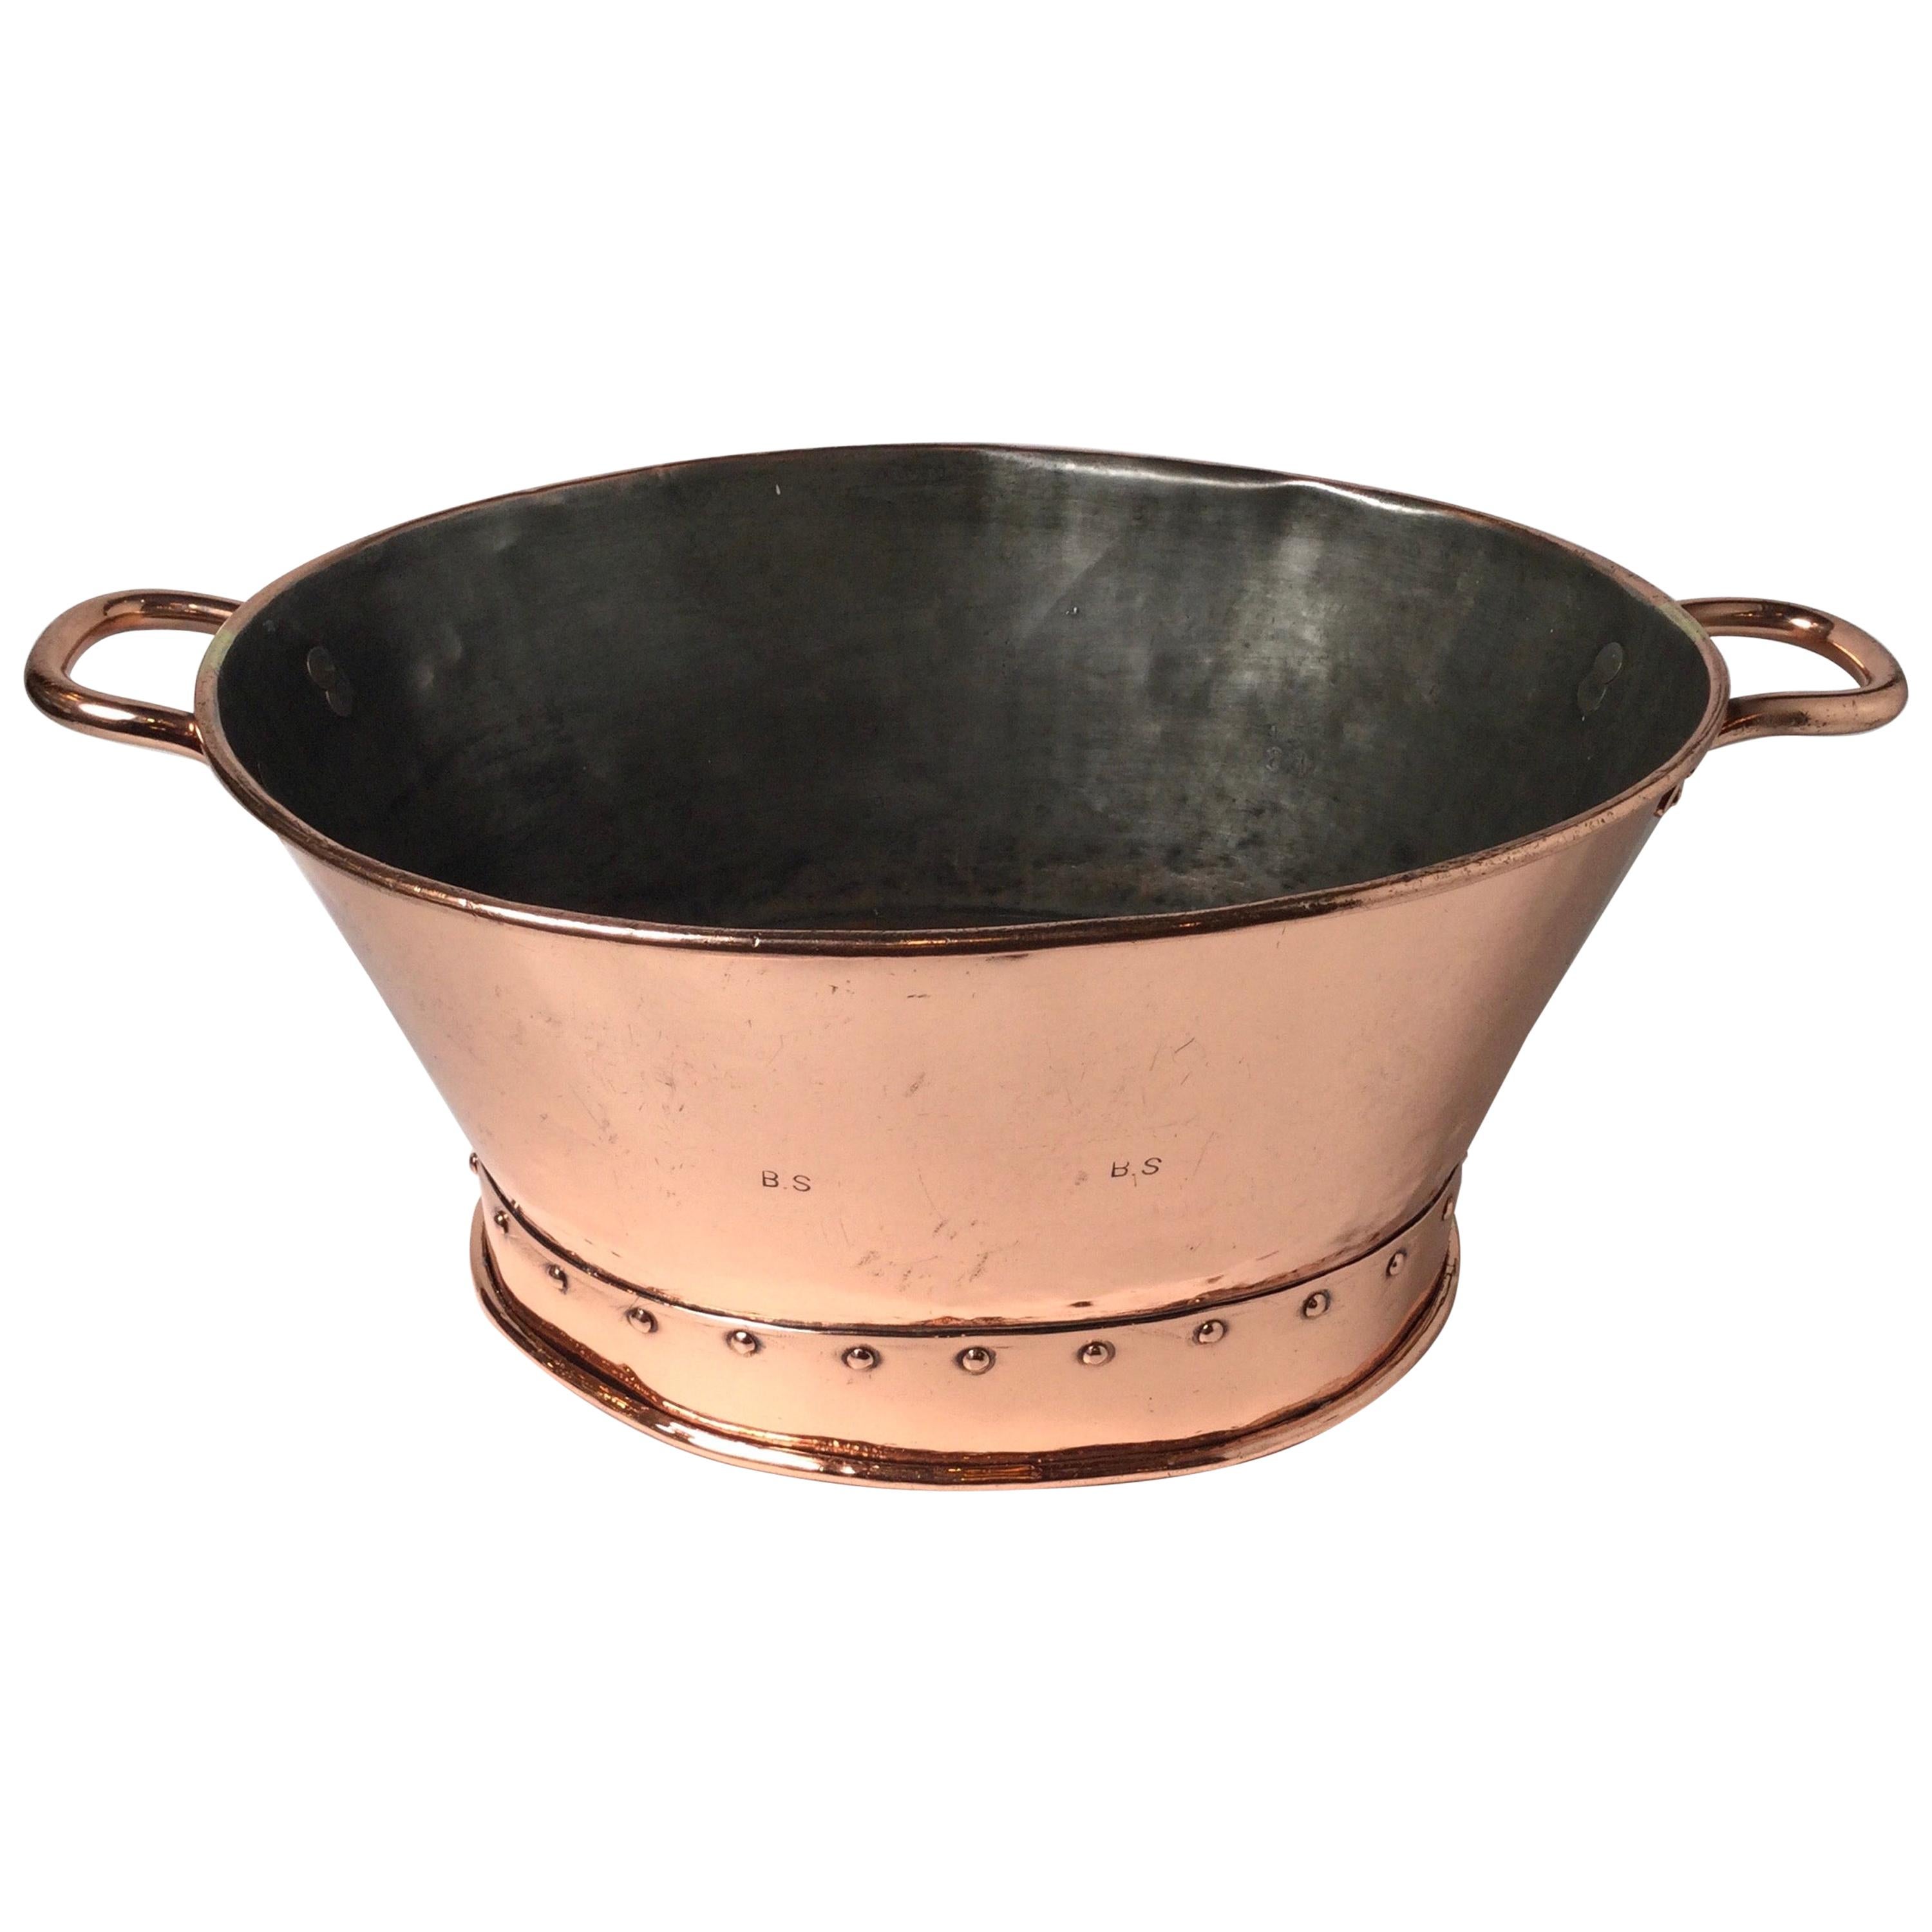 Exquisite 19th Century Copper Confiture Large Jam Pot or Chiller